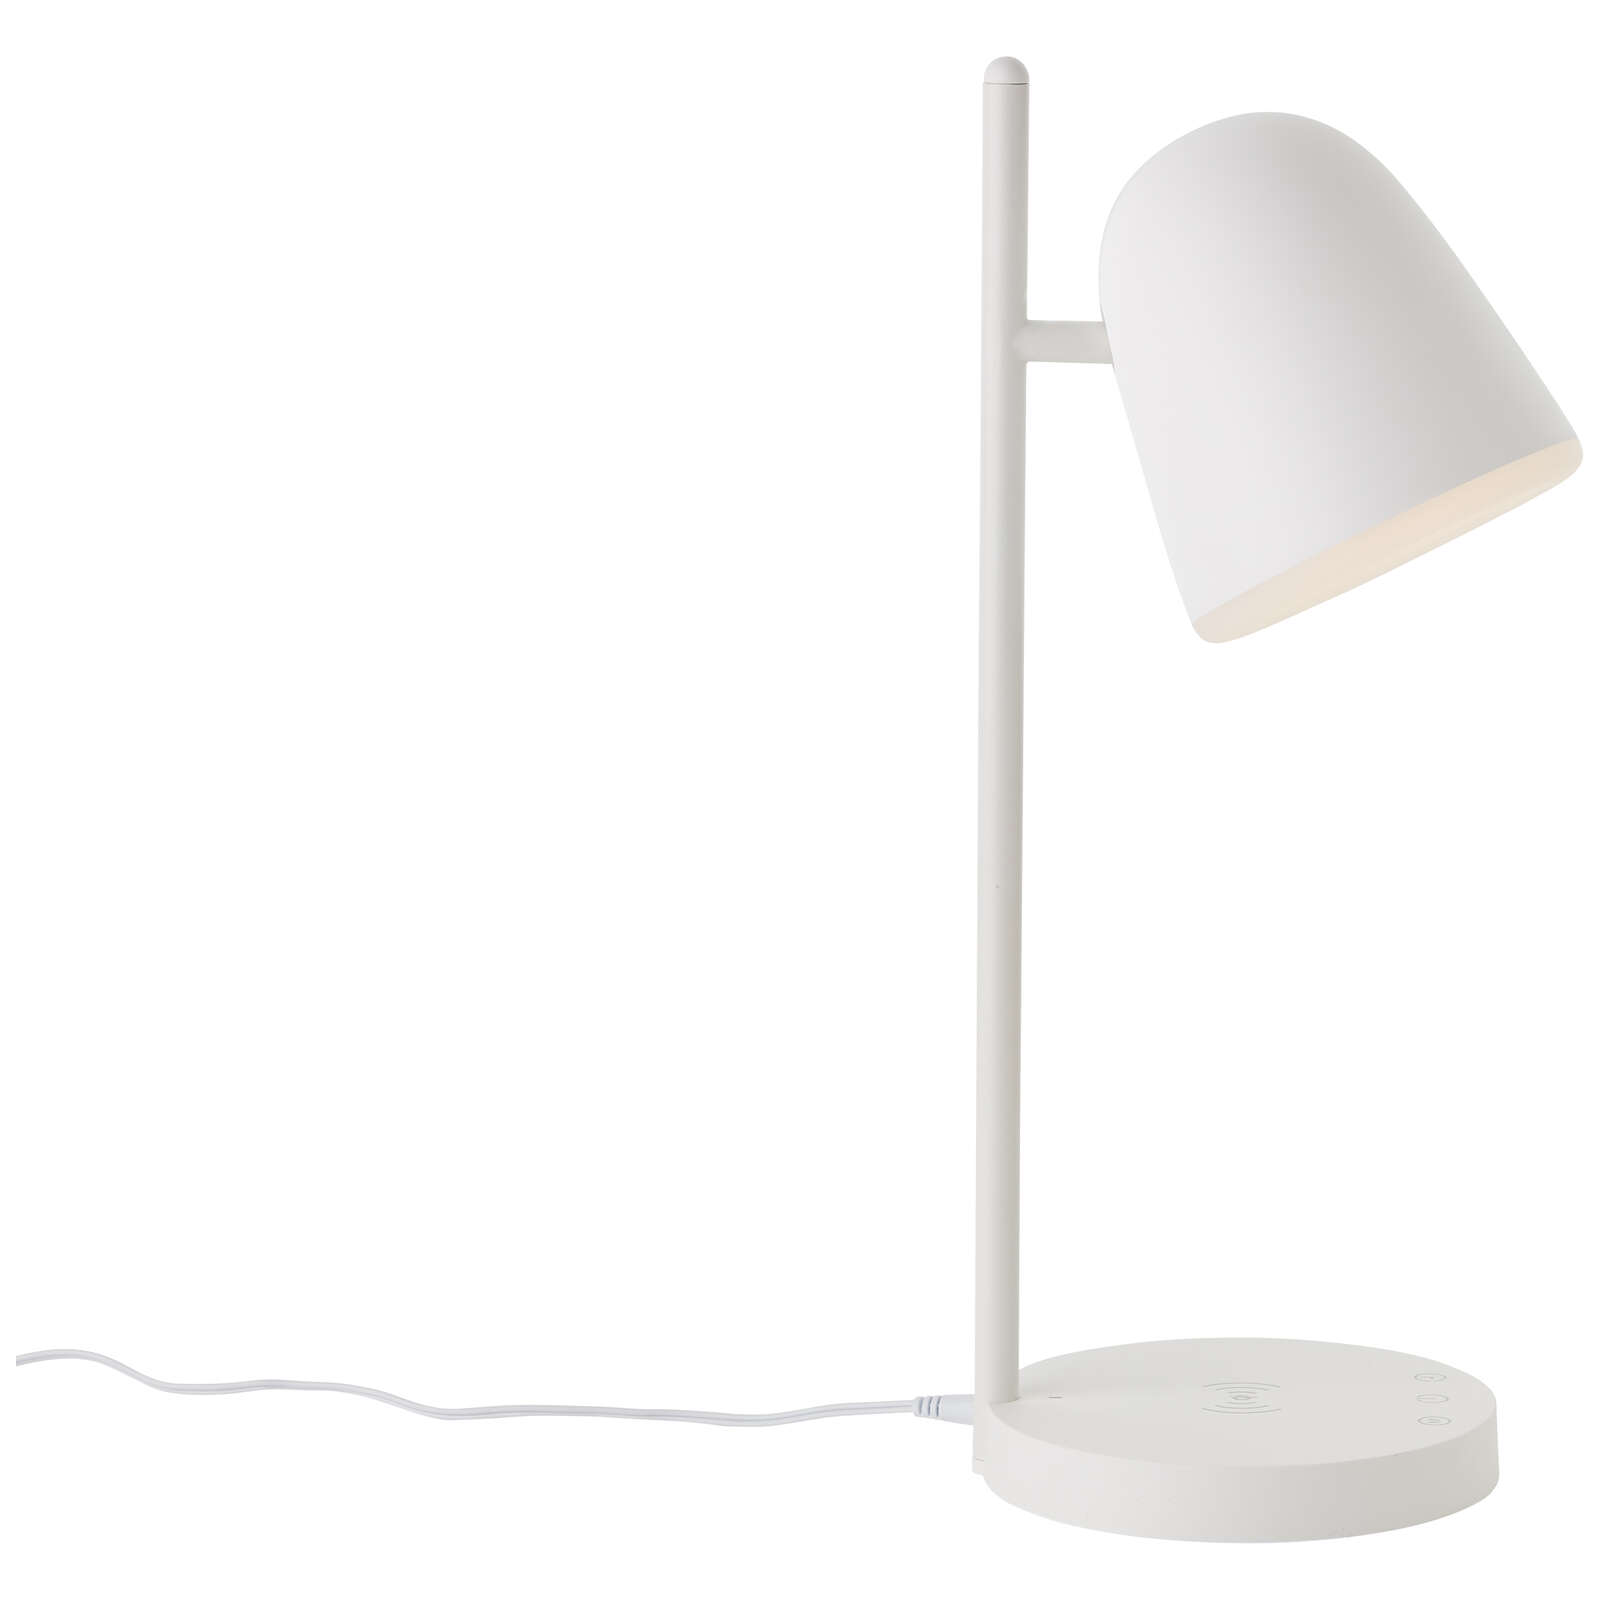             Lampe de table en plastique - Lotta - Blanc
        